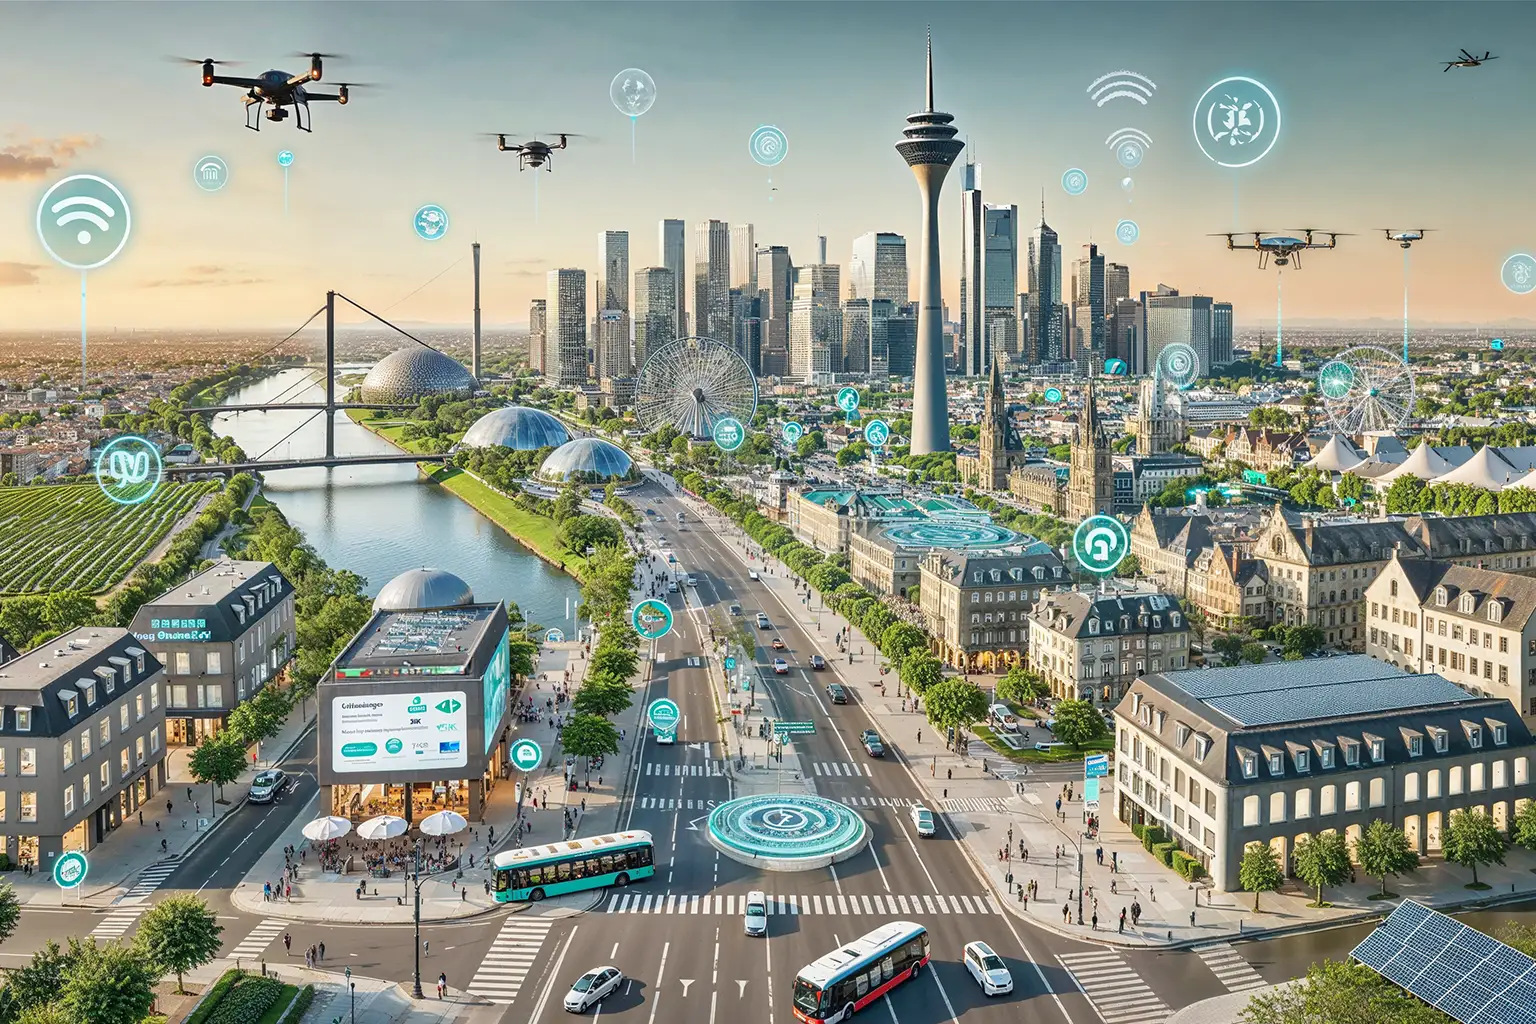 Smarte Ideen für Smart Cities gesucht: Urban.KI fördert KI-Projekte von Kommunen und Kreisen